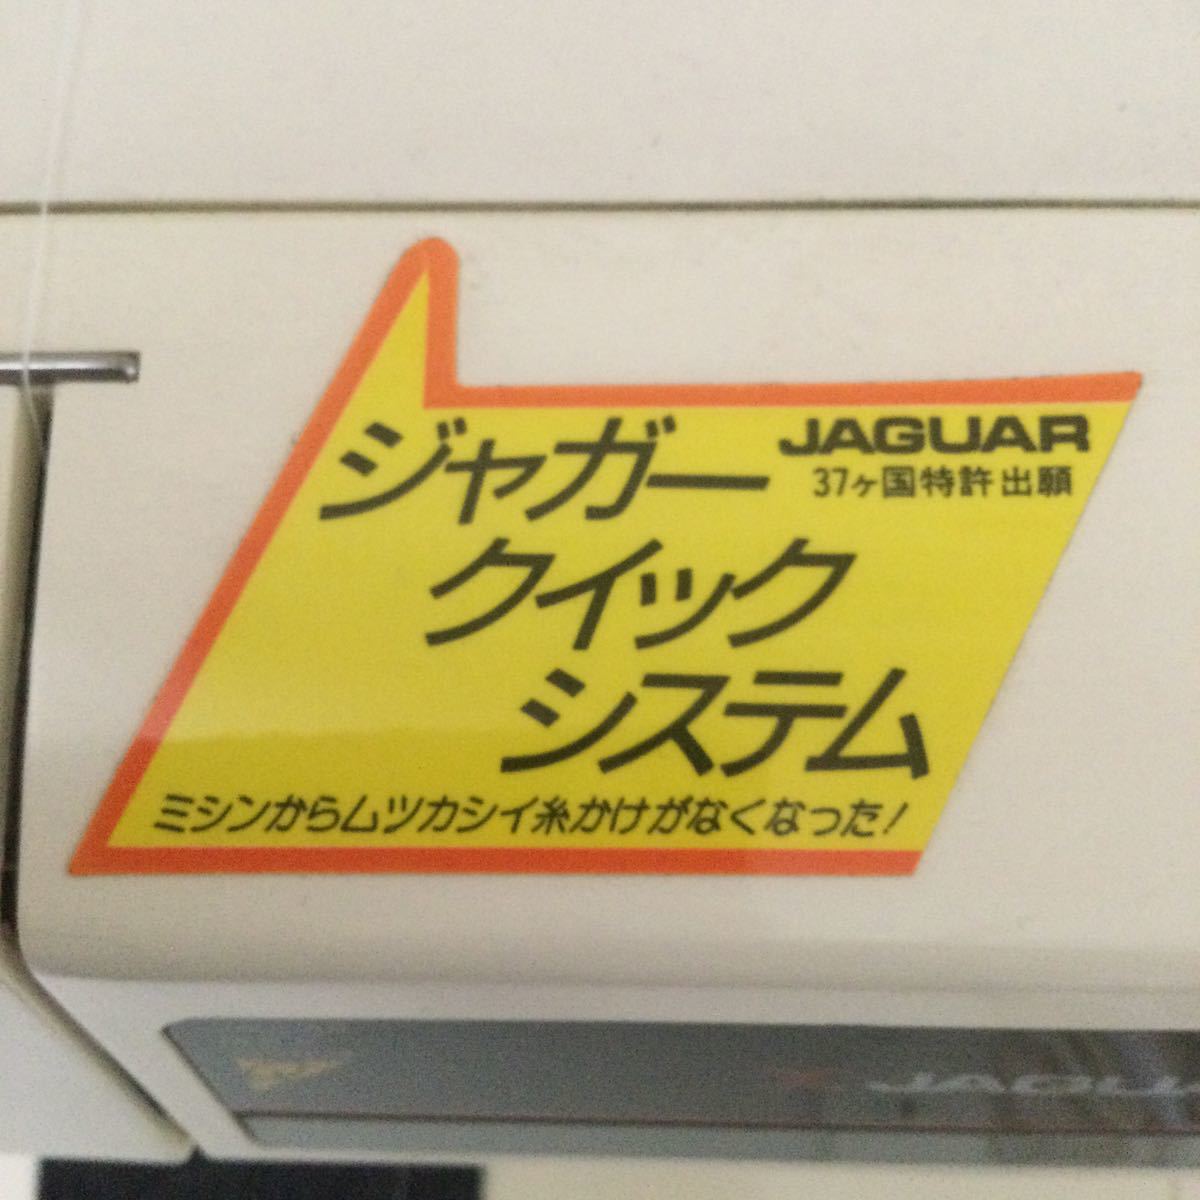 JAGUAR Jaguar Quick система швейная машина 